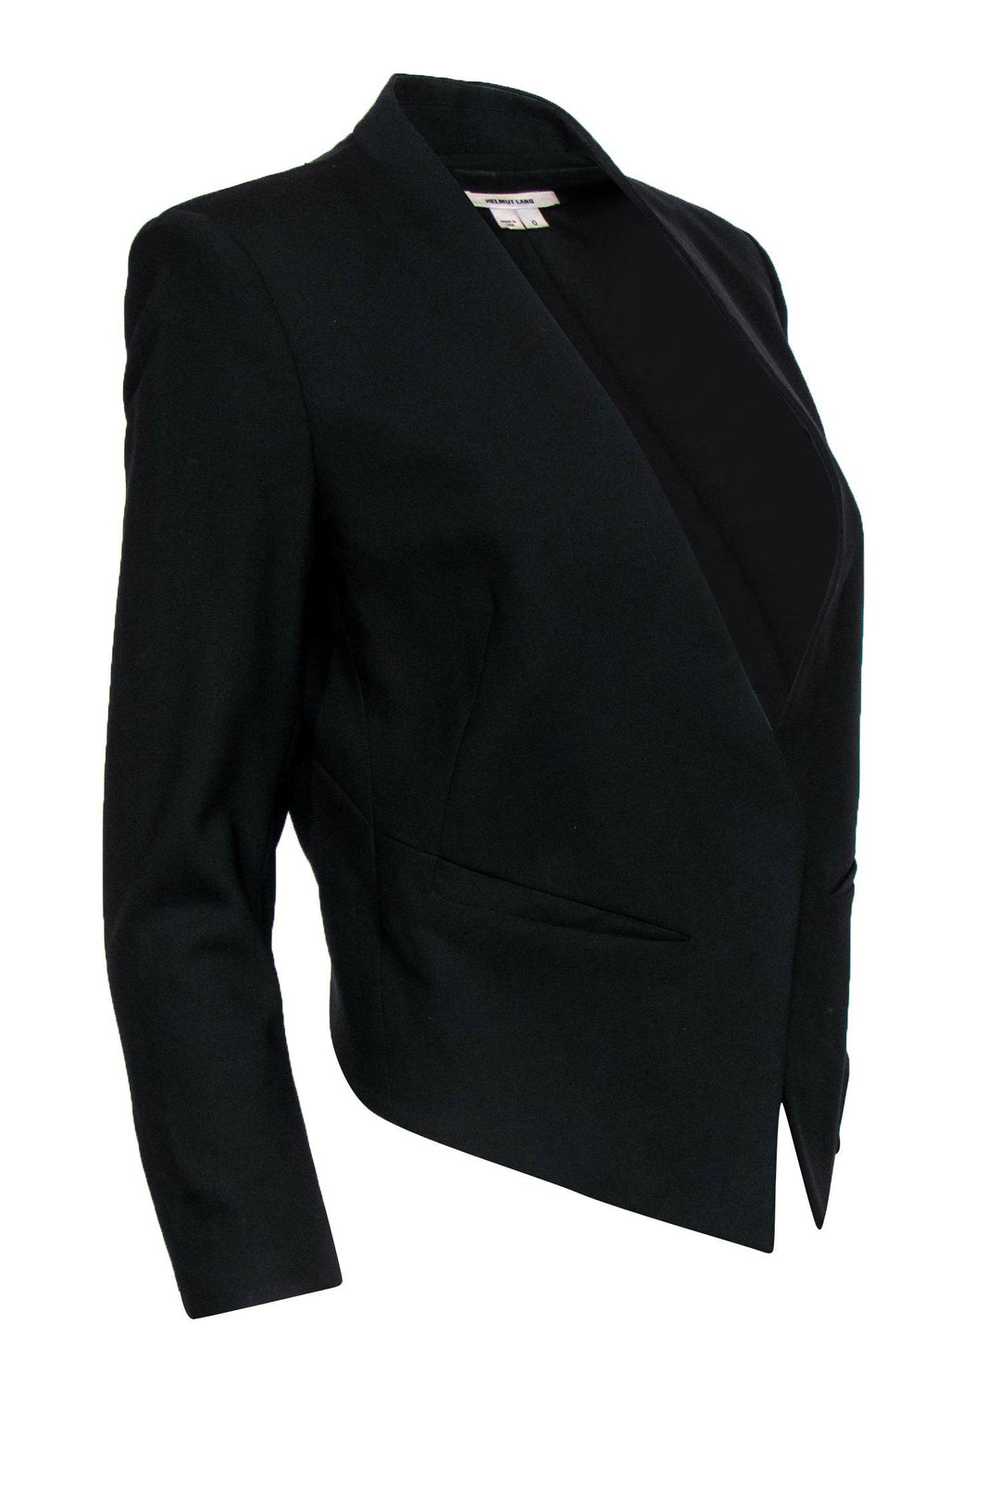 Helmut Lang - Black Wool Collarless Blazer Sz 0 - image 2